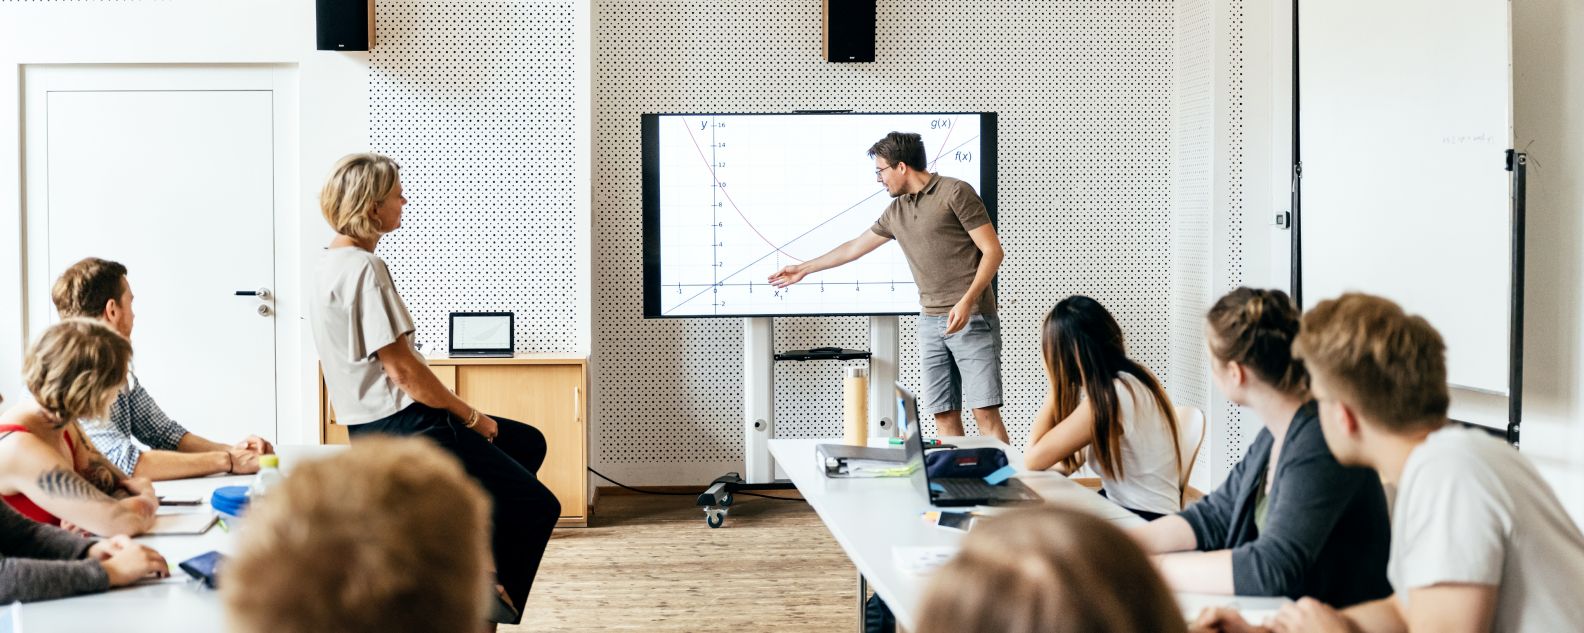 Seorang mahasiswa memberikan presentasi di depan kelas pada sesi seminar dan menggunakan monitor besar sebagai alat bantu visual